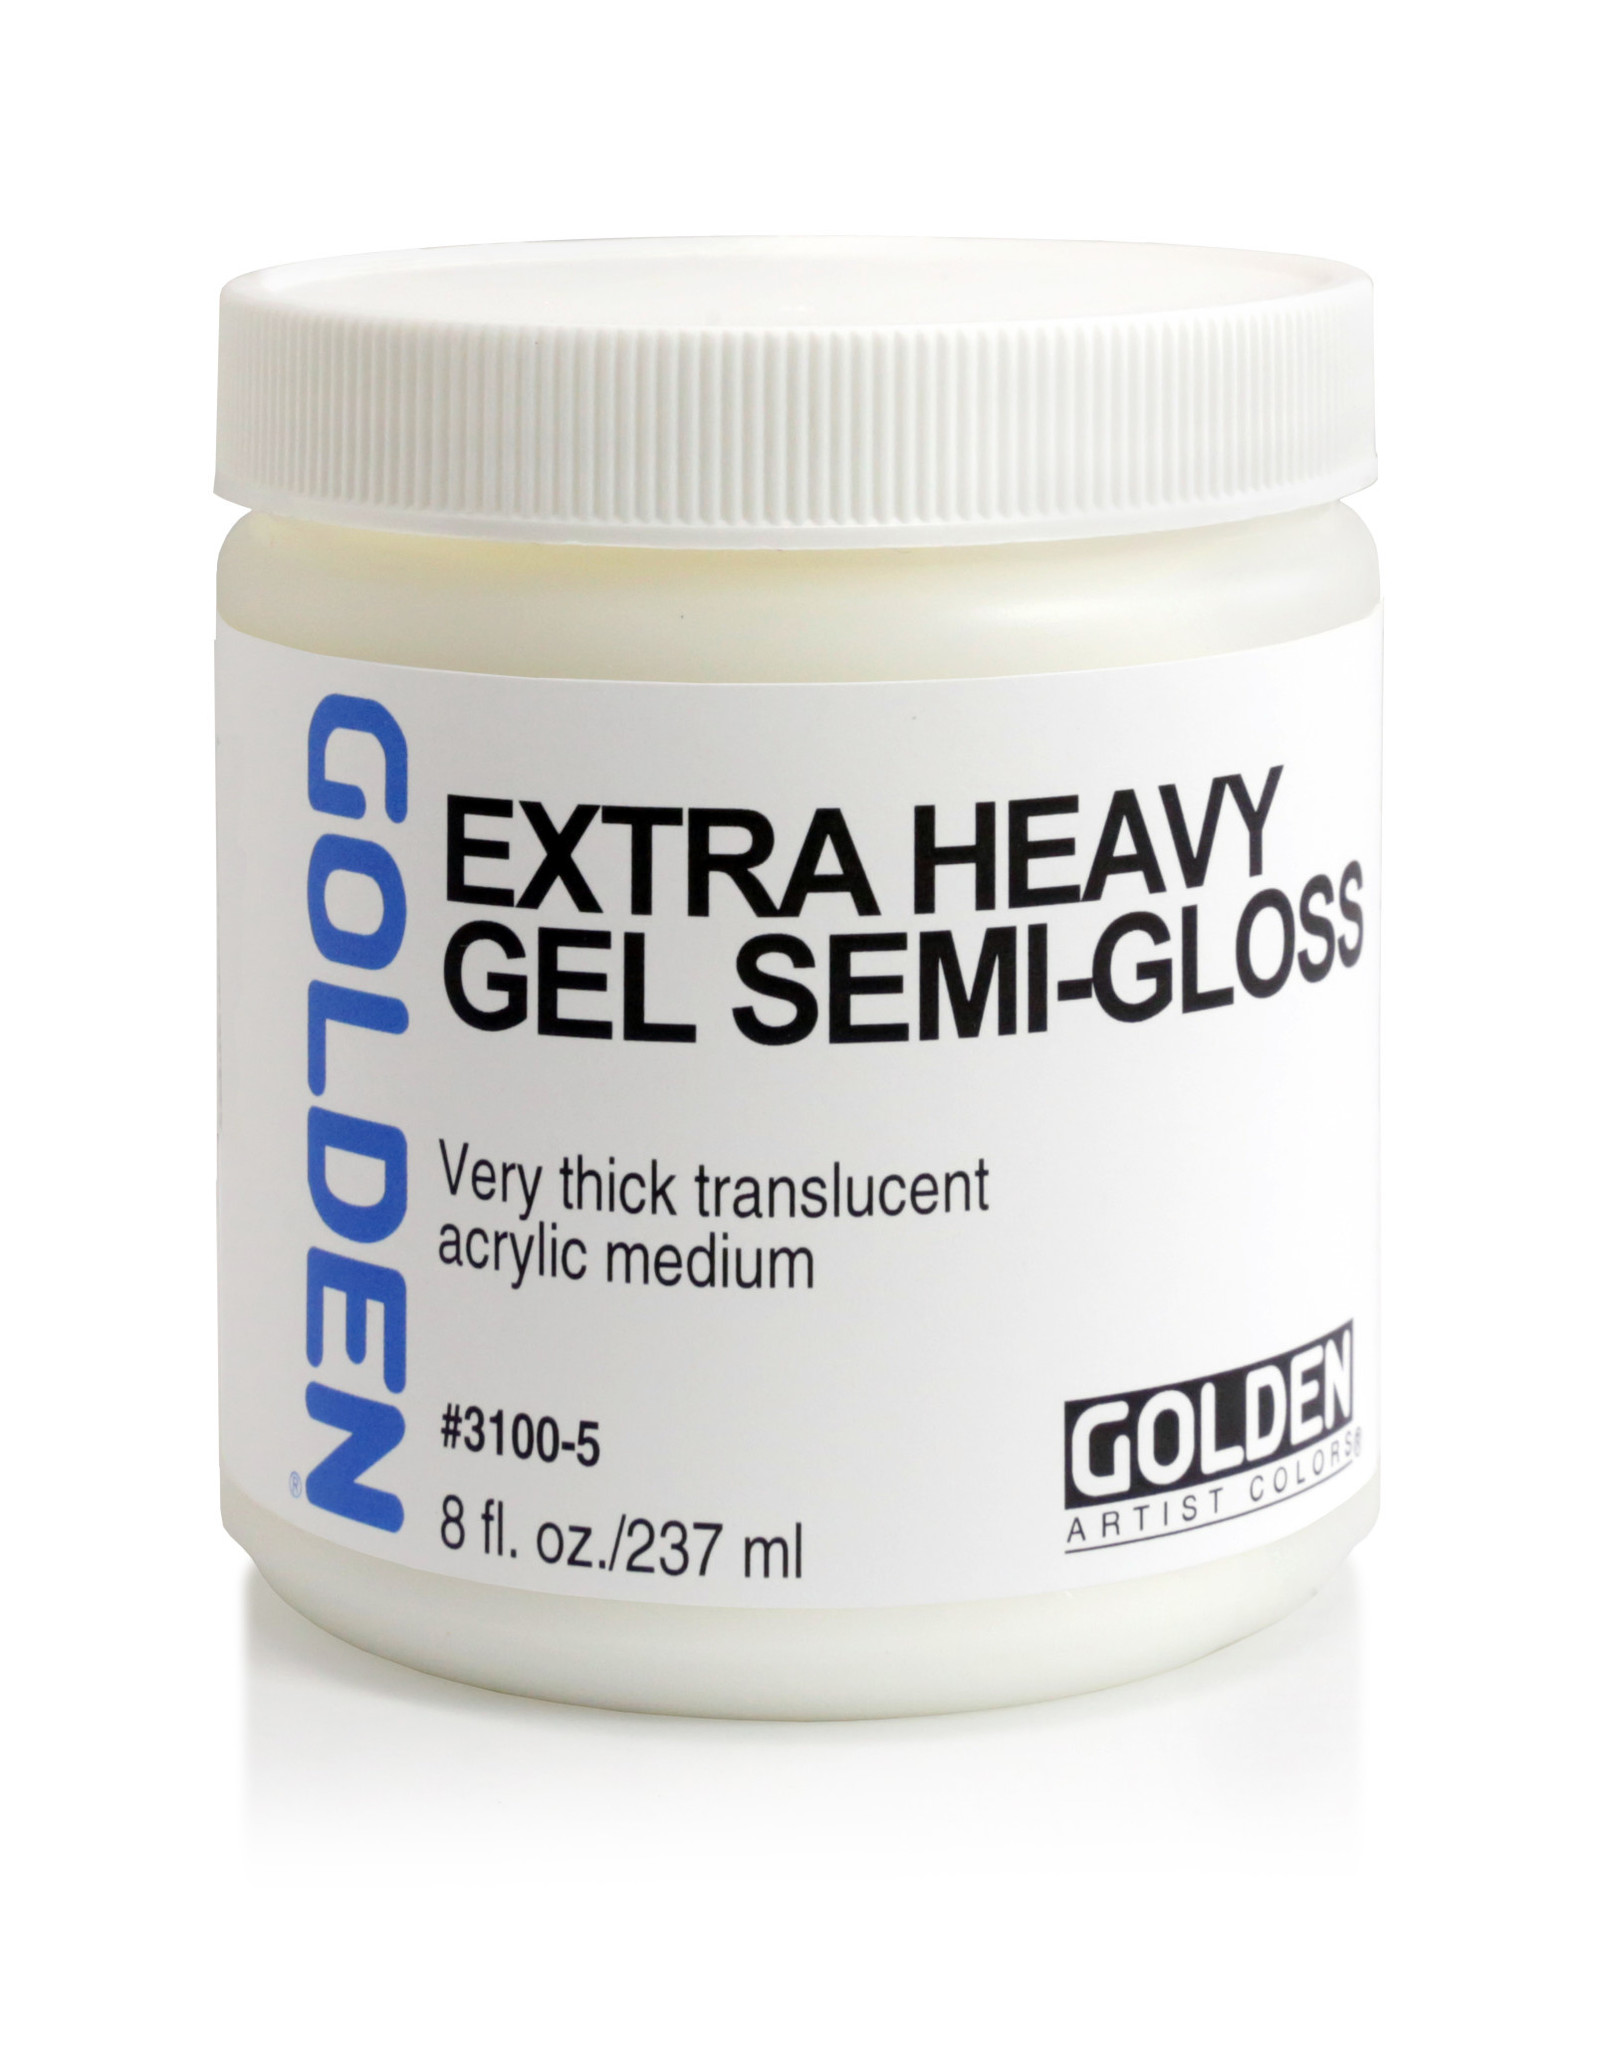 Golden Golden Extra Heavy Gel Medium, Semi-Gloss, 8oz